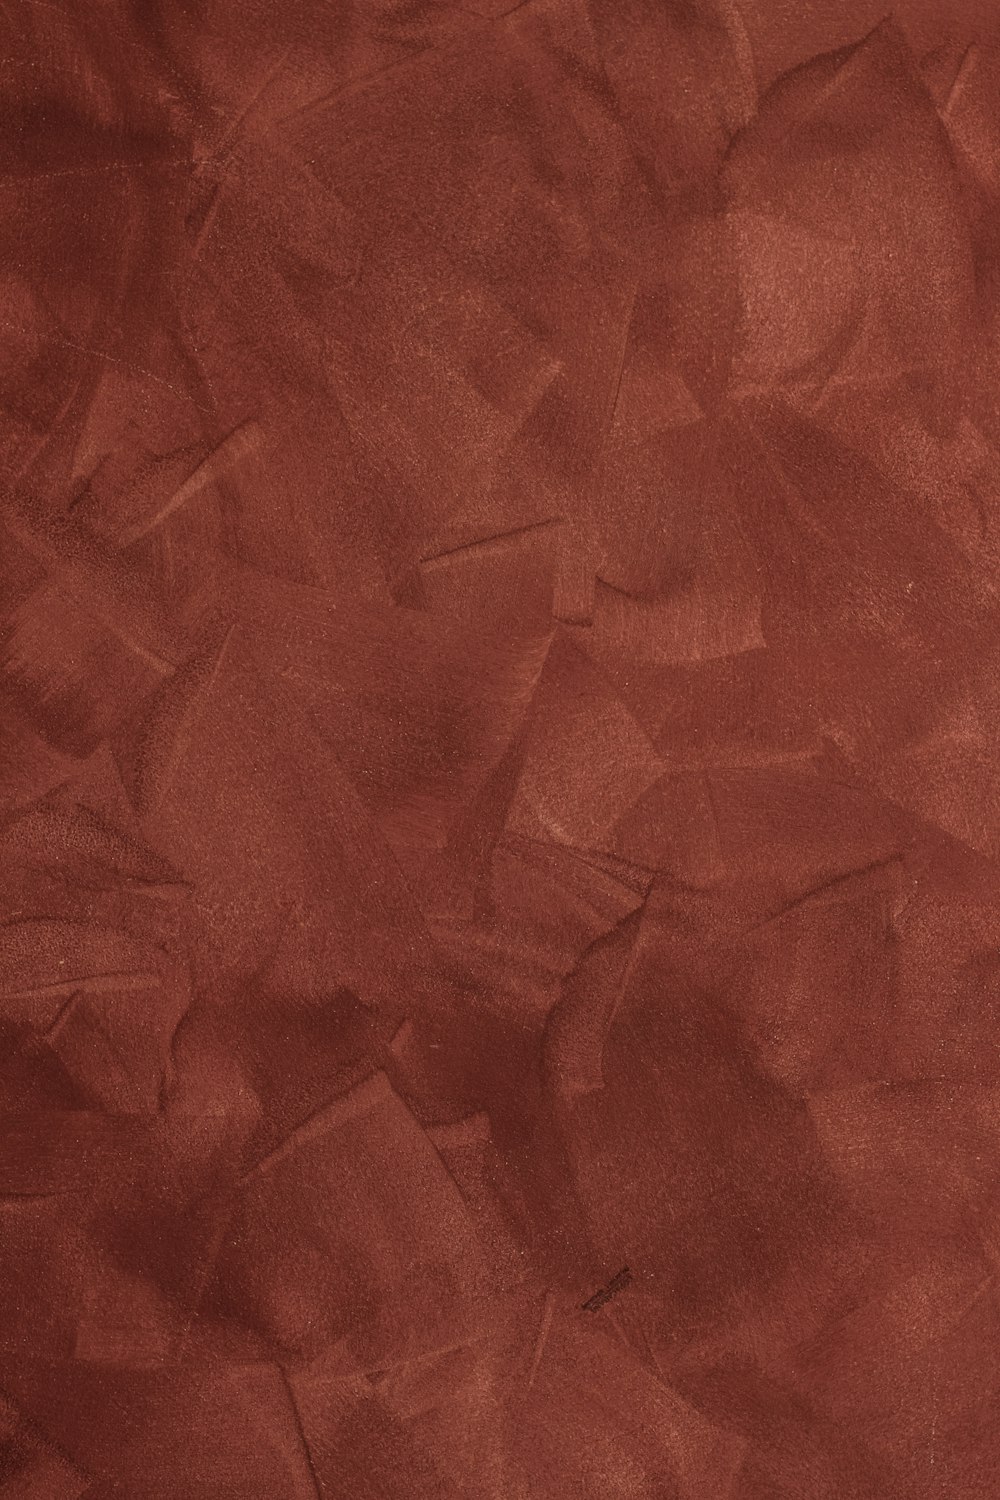 un fond rouge avec une texture rugueuse de papier